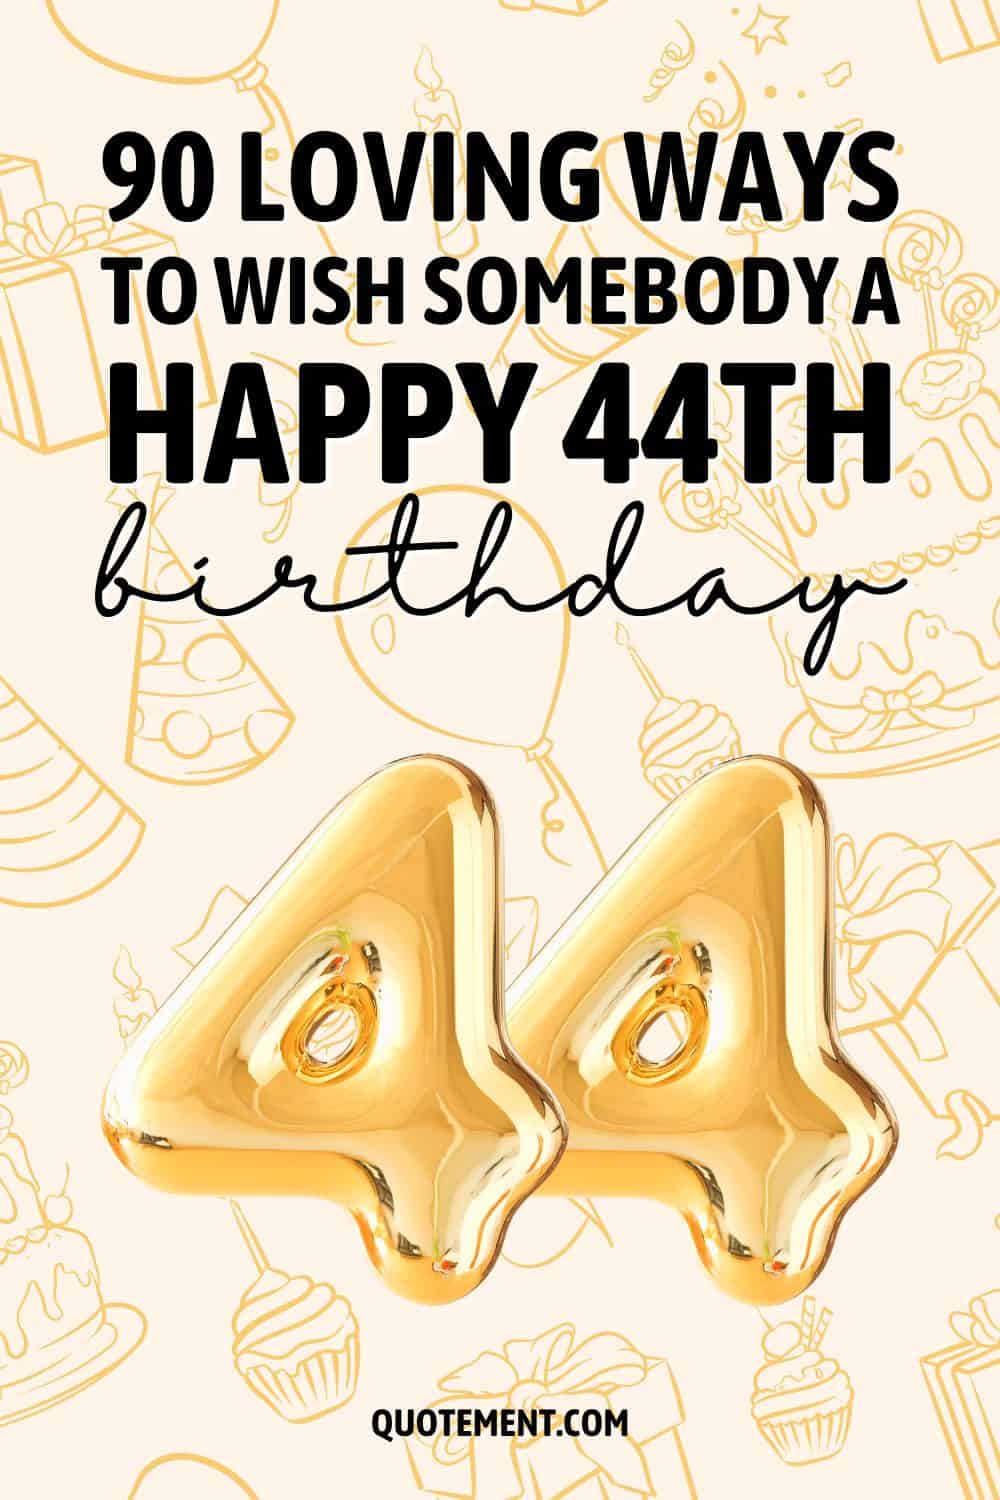 90 Loving Ways To Wish Somebody A Happy 44th Birthday
